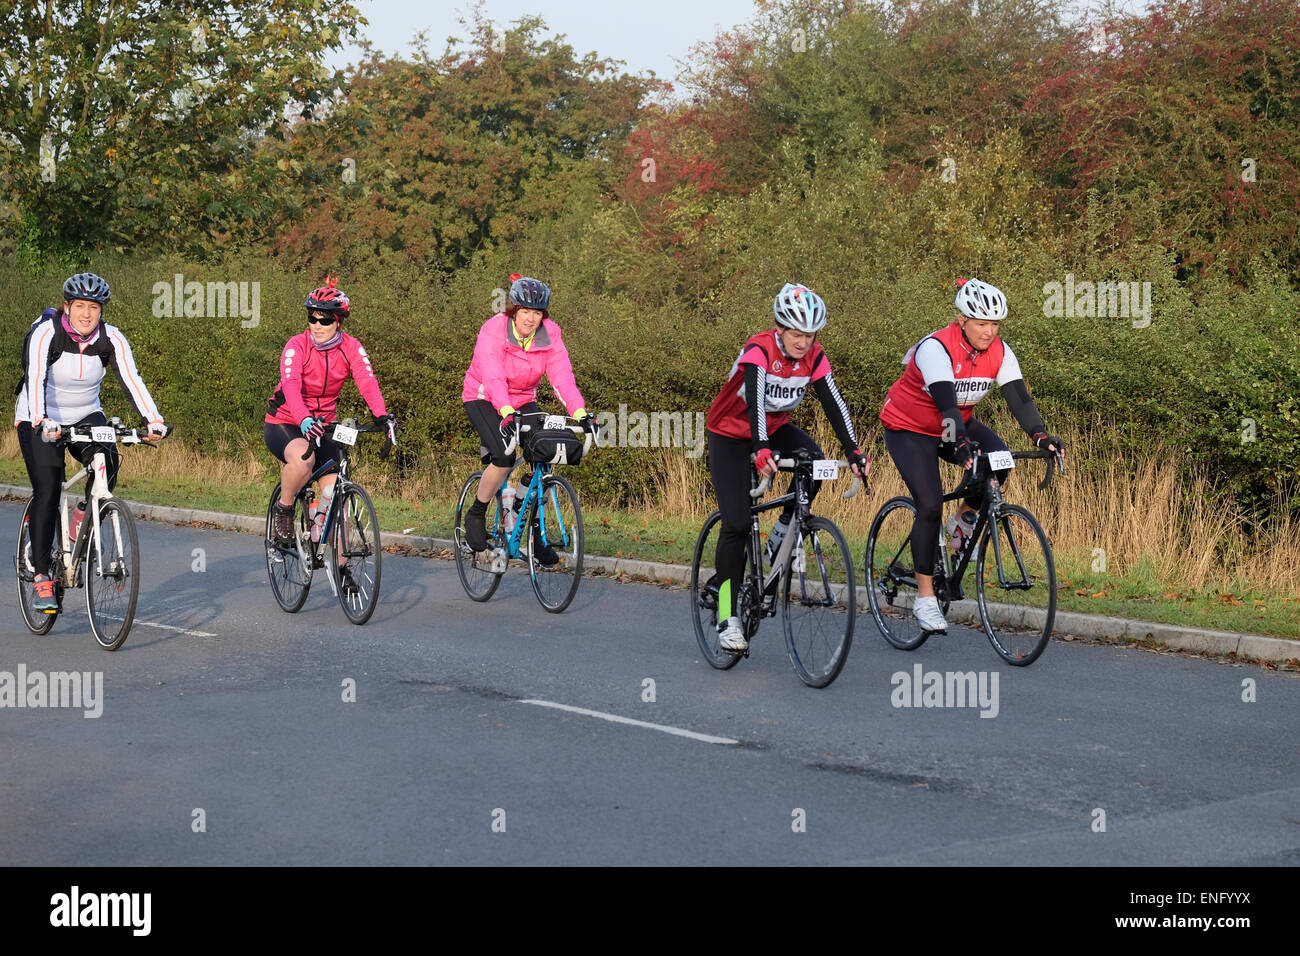 Les cyclistes de sexe féminin figurant sur un vélo Banque D'Images